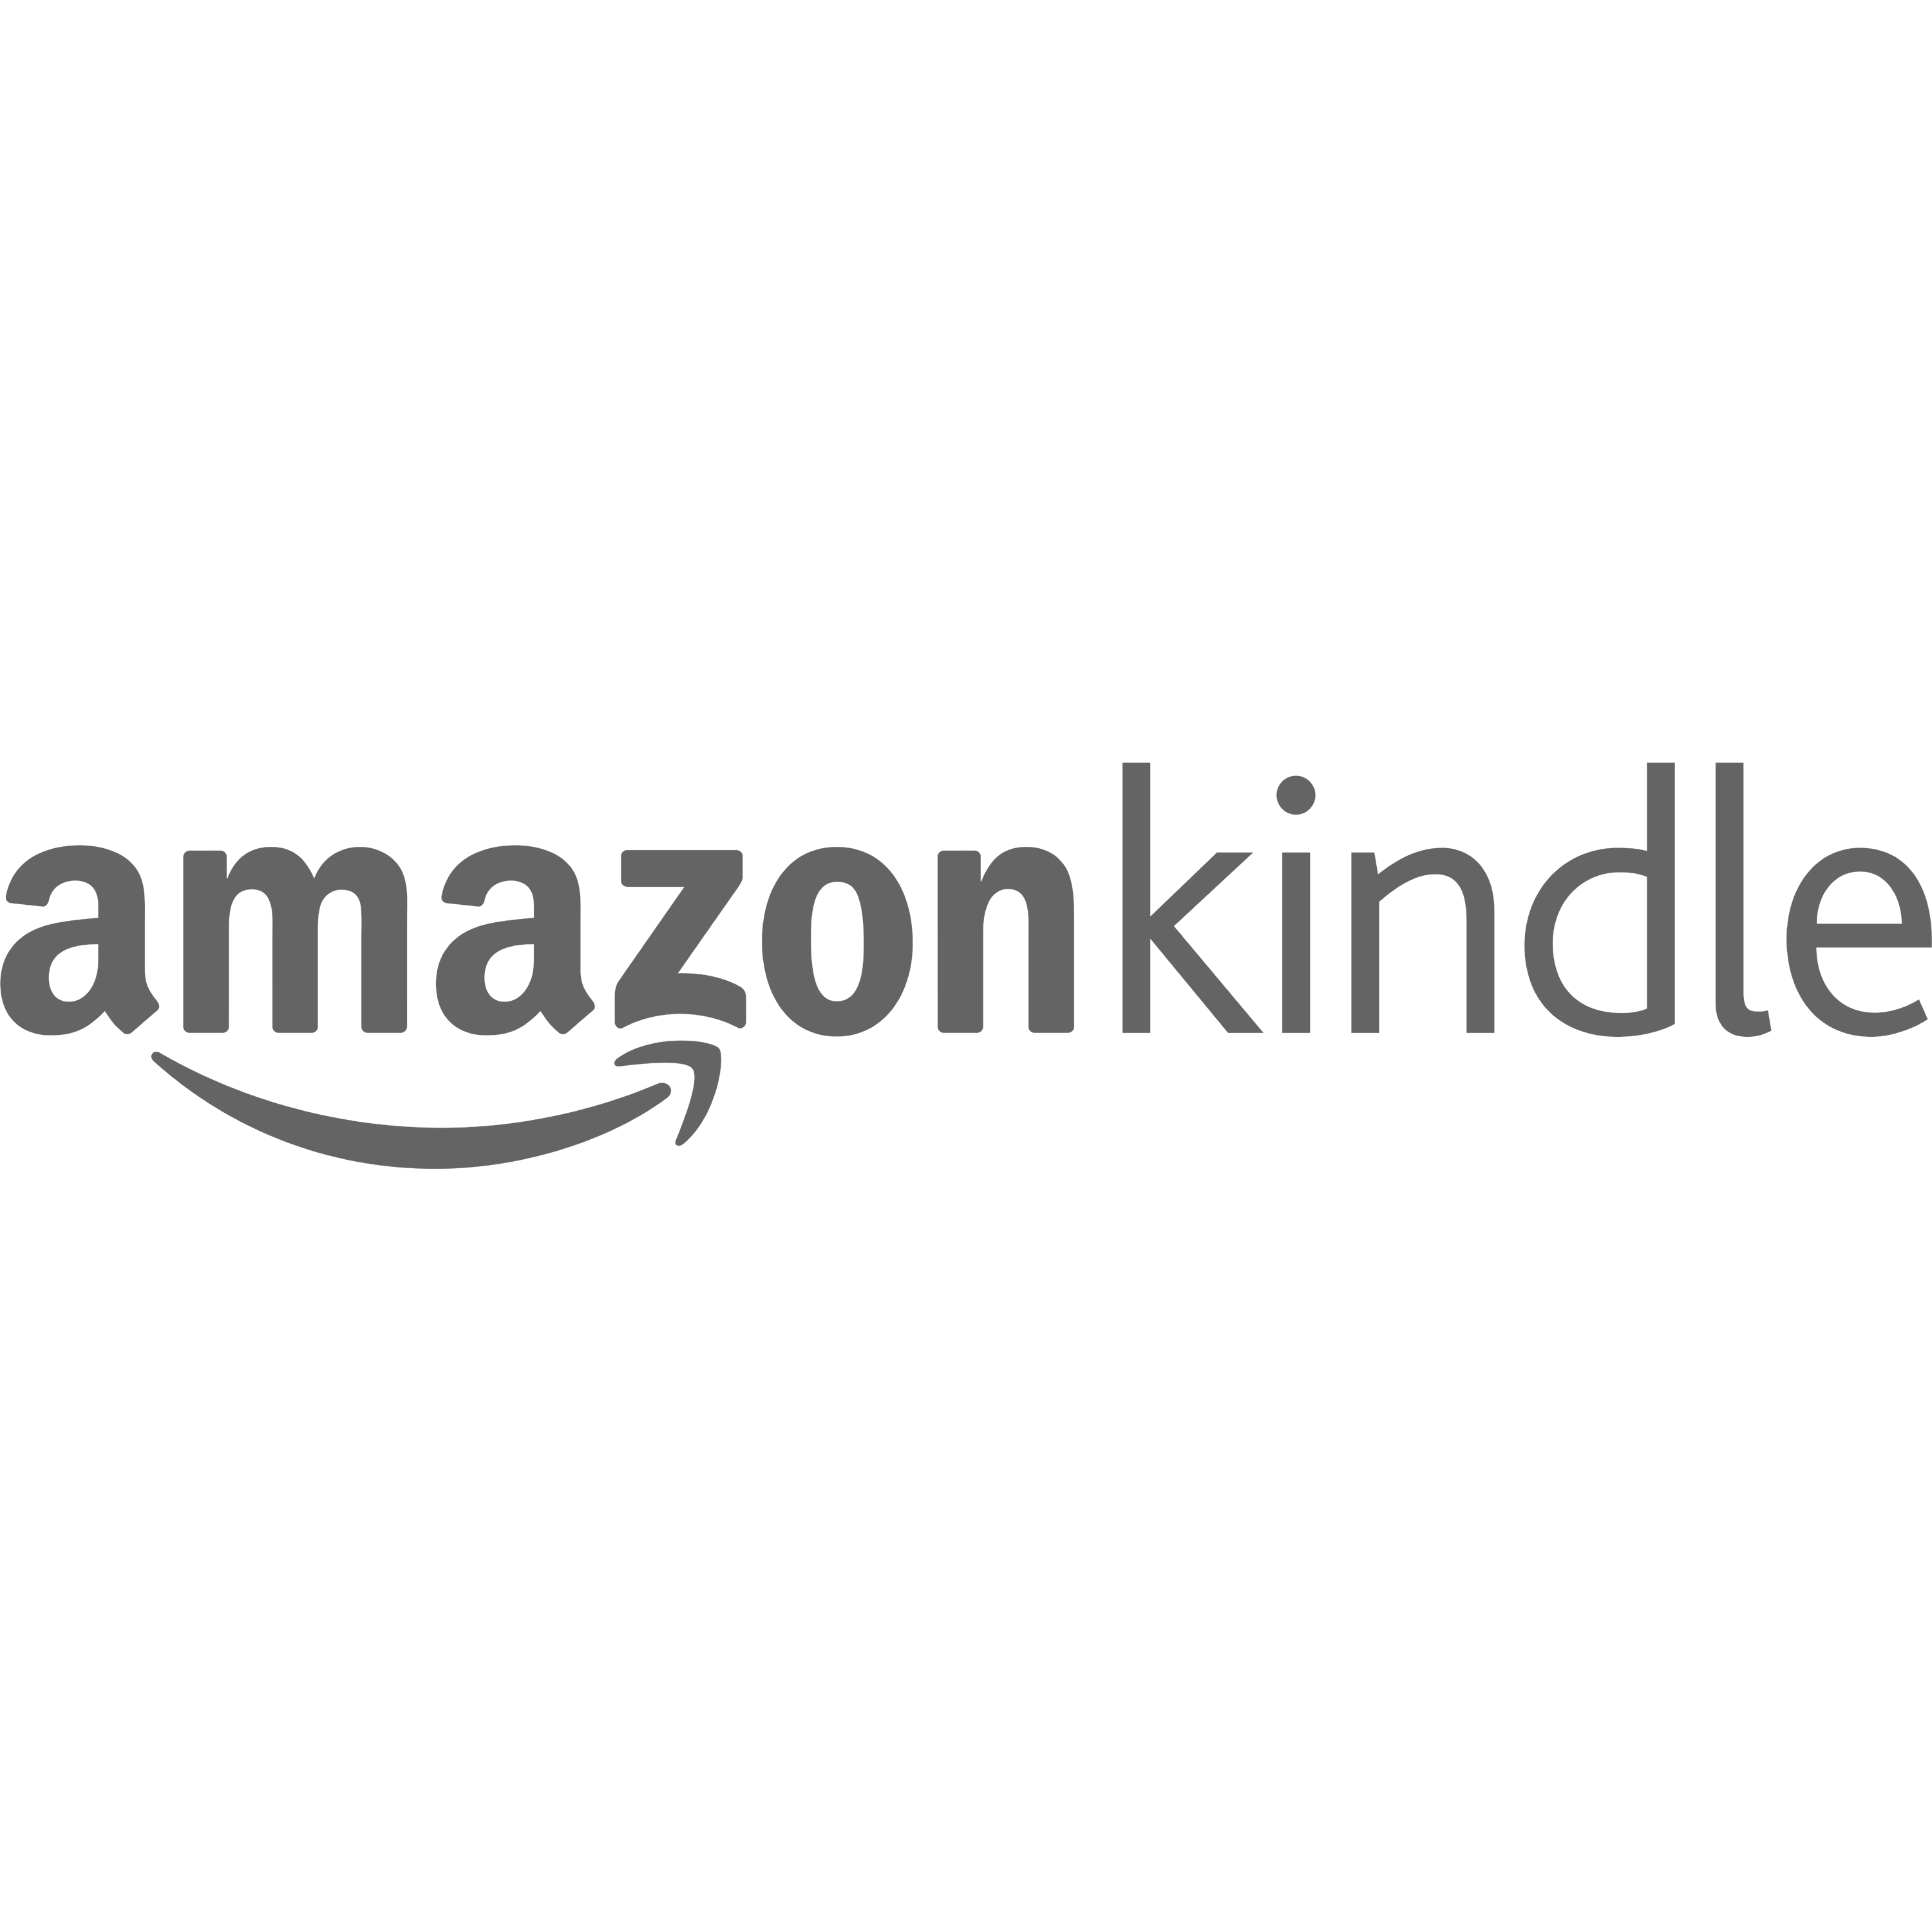 Amazon Kindle Logo Transparent Picture